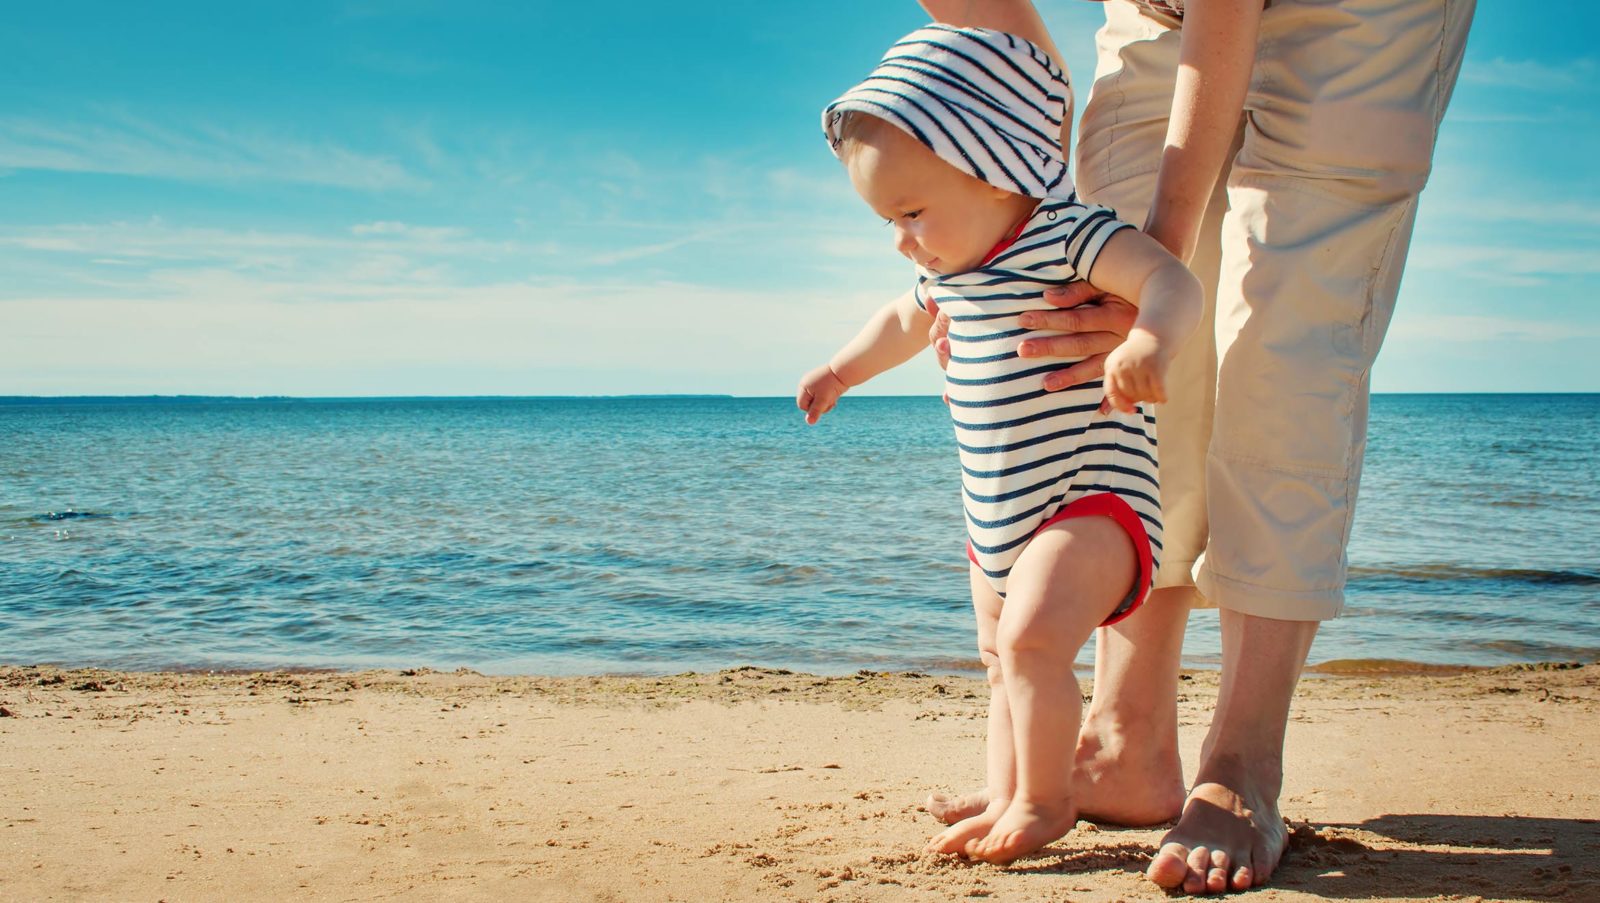 Conseils bébé et soleil: l'été avec bébé en sécurité | Bébé M